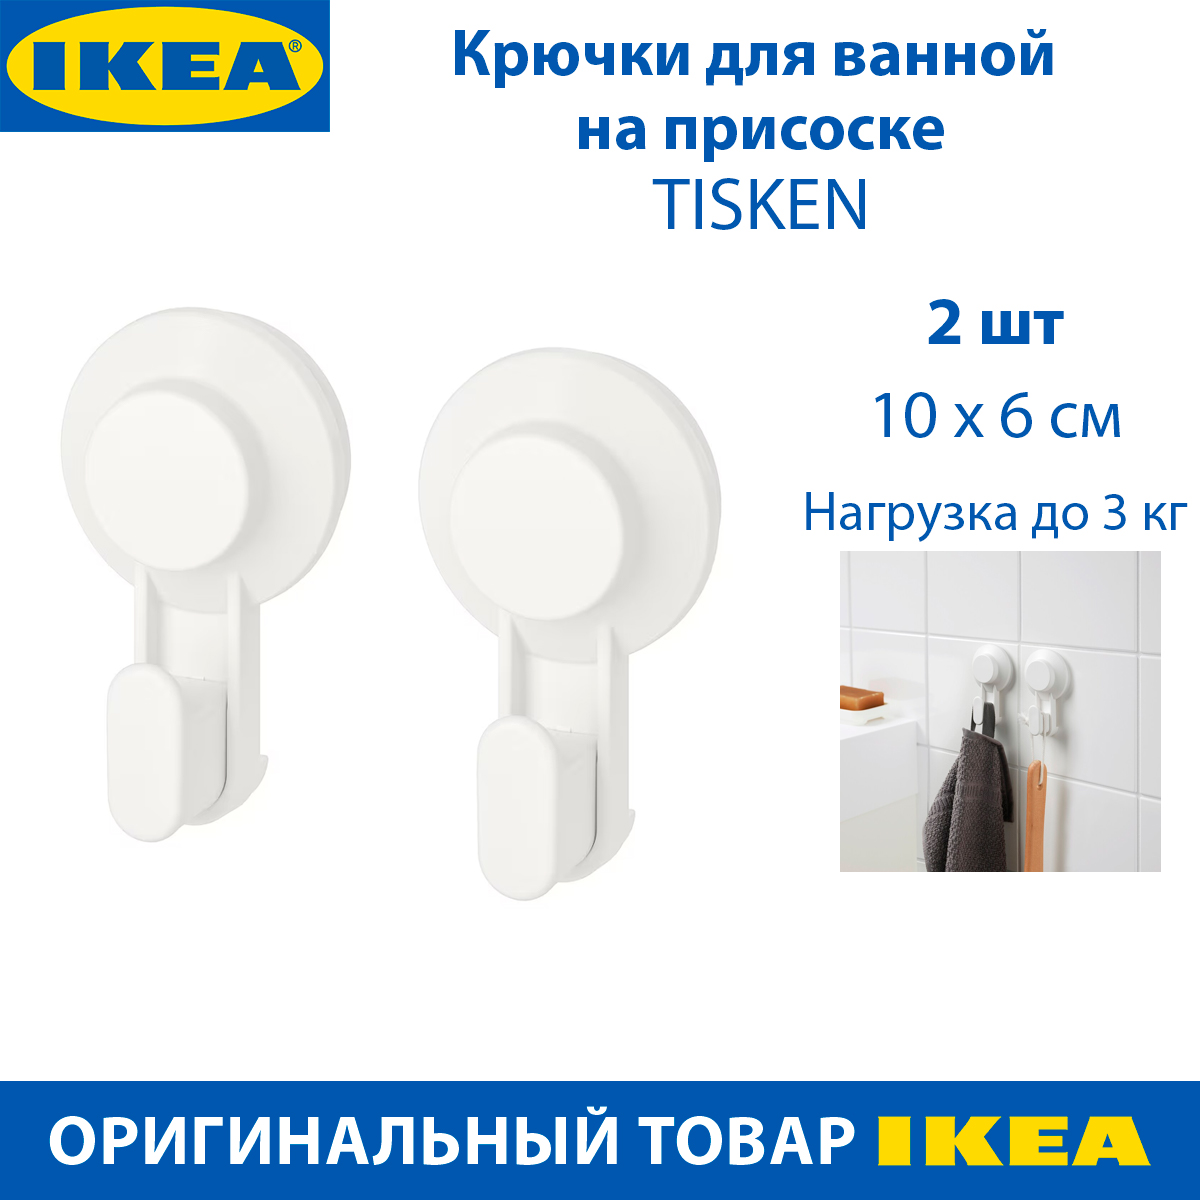 Крючки для ванной IKEA TISKEN для полотенец, на присоске, белые, 2 шт